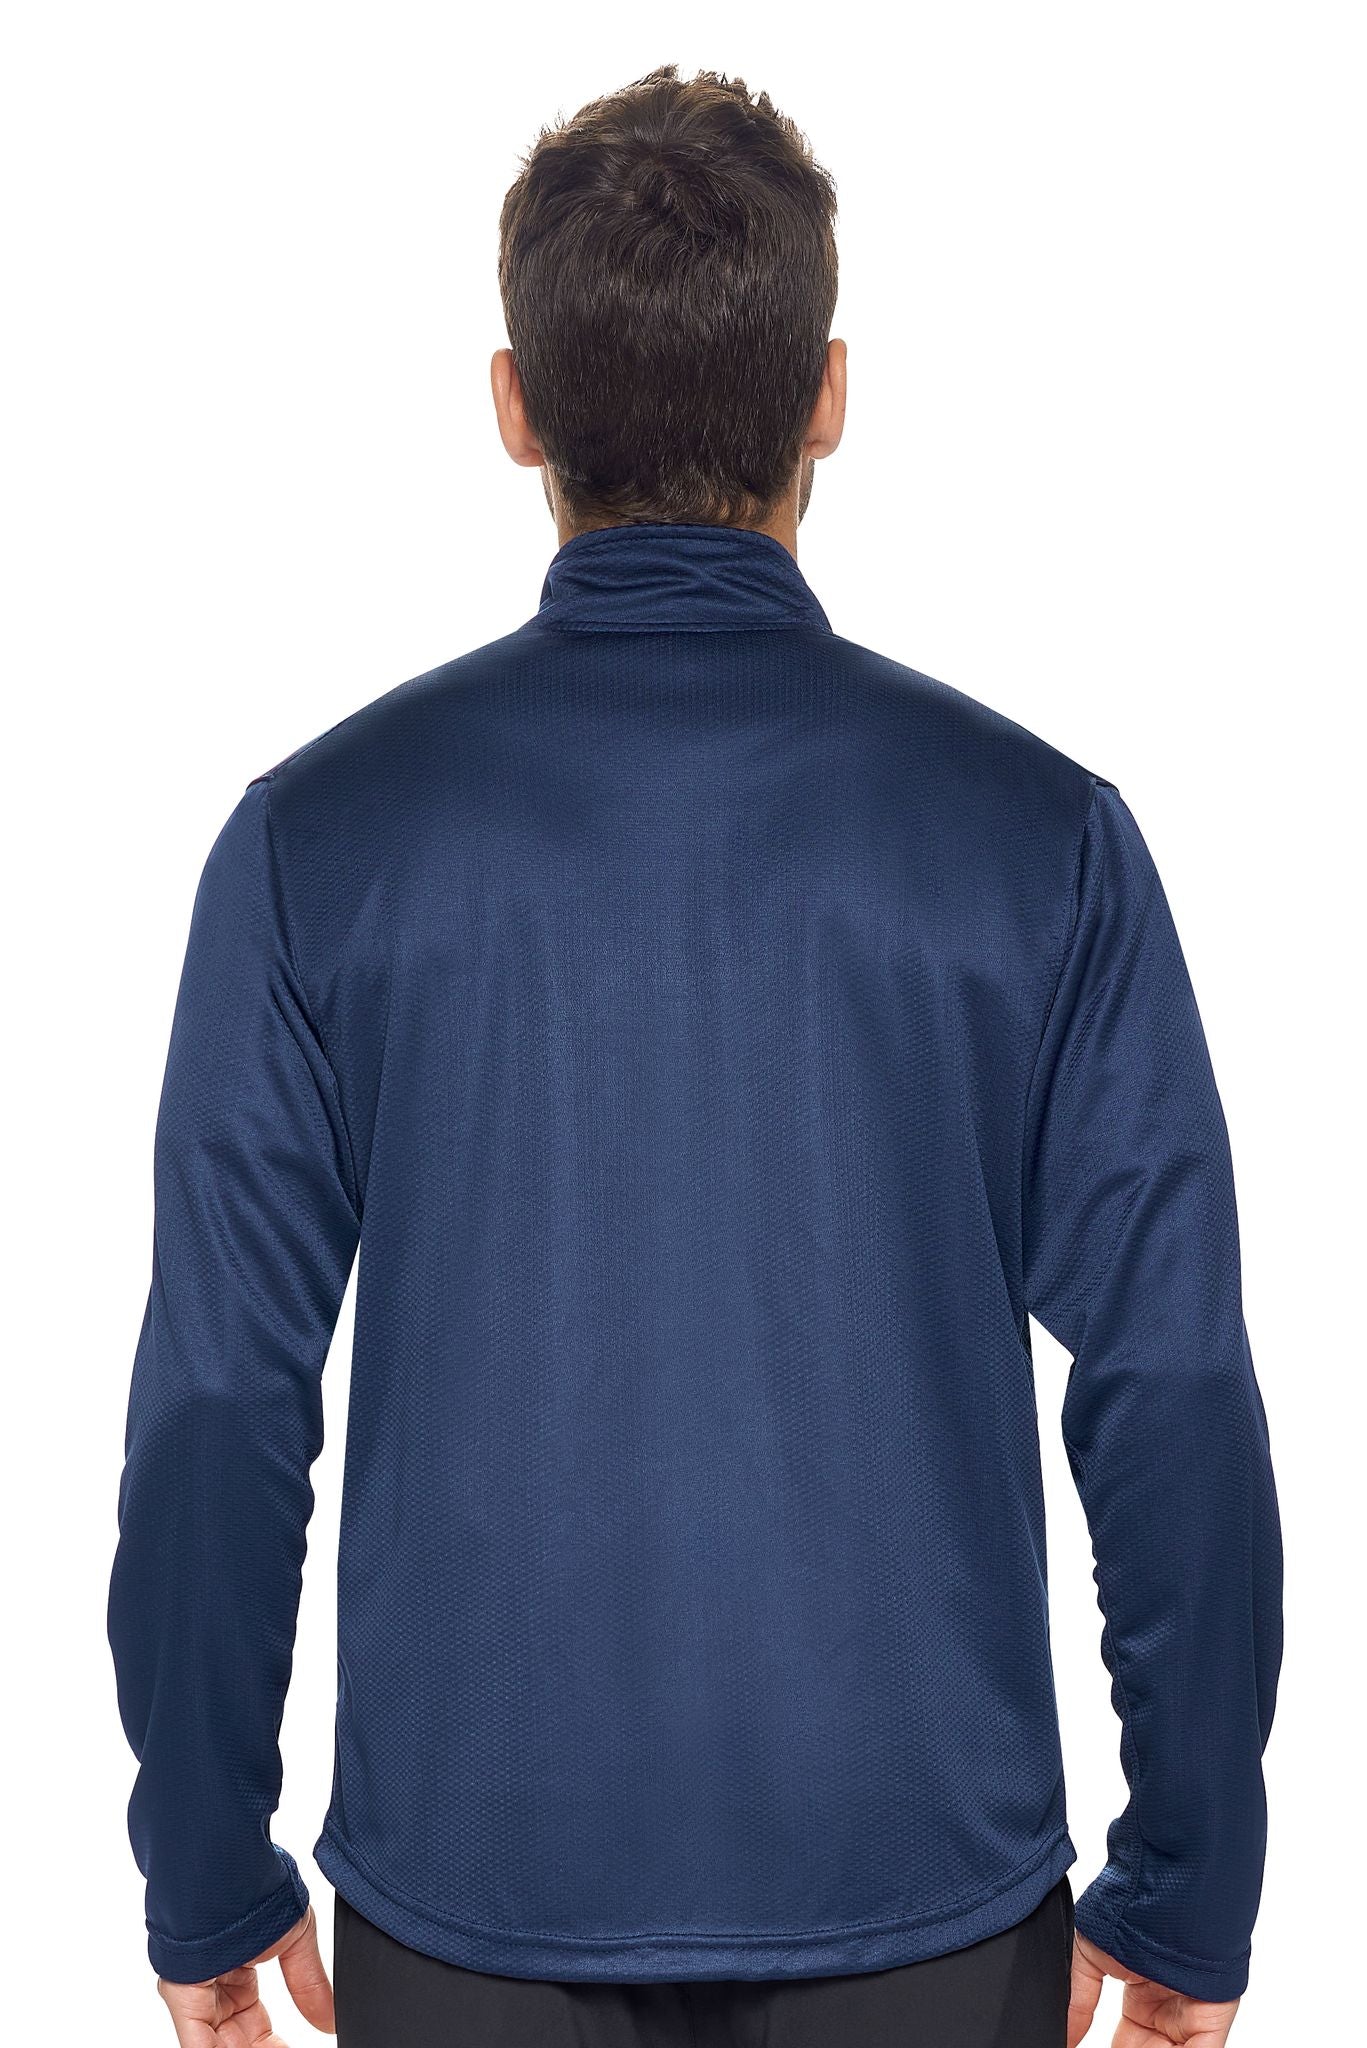 Expert Brand Wholesale Men's Sportsman Jacket in Navy Image 3#navy